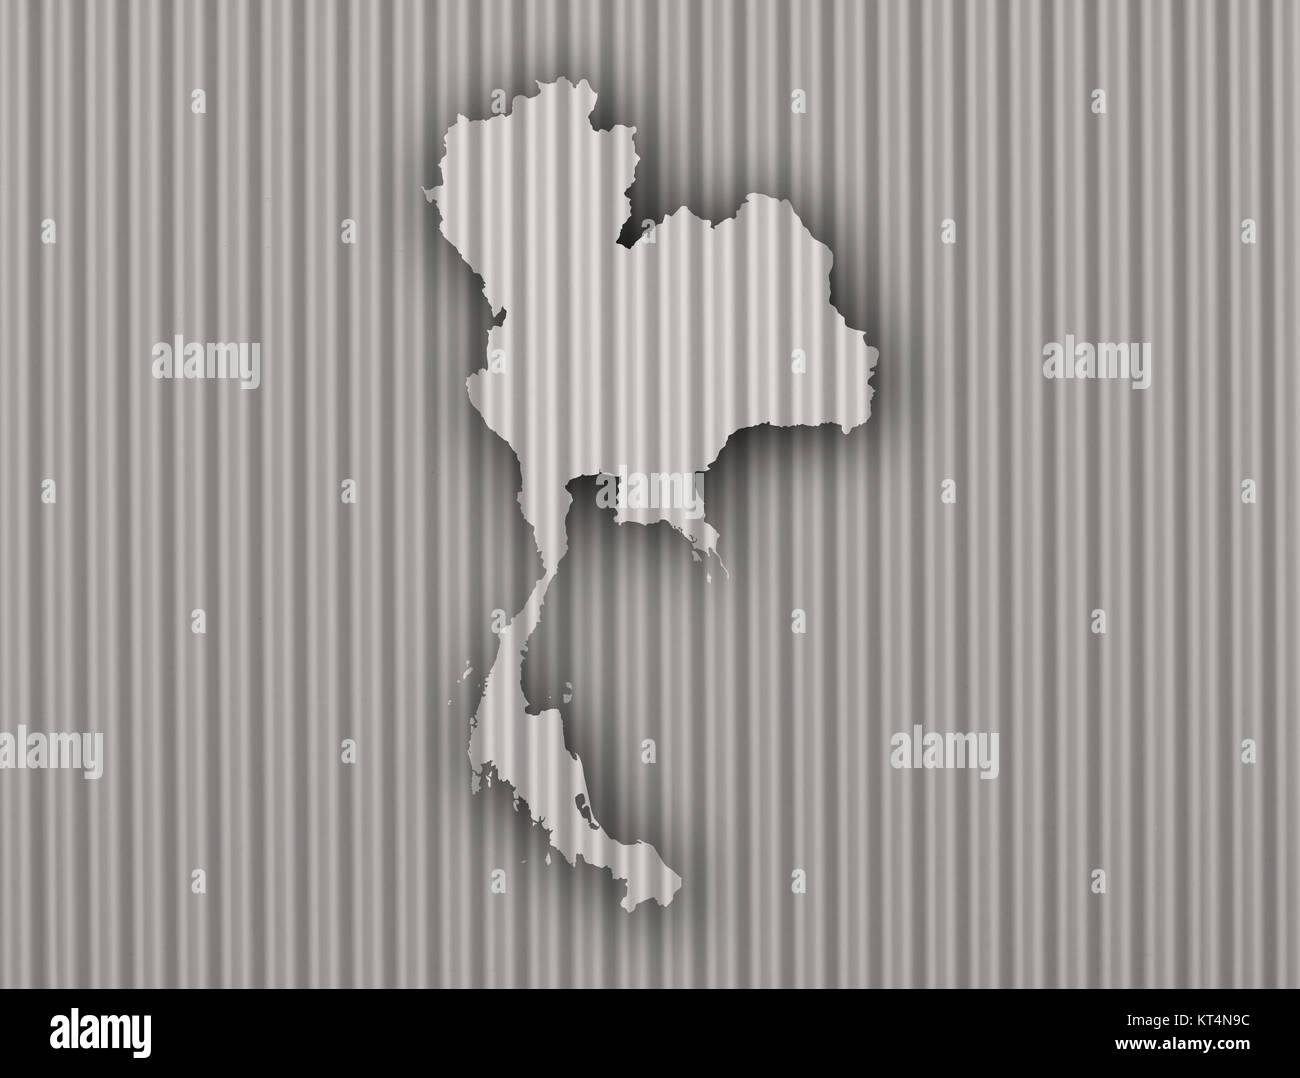 Karte von Thailand auf Wellblech Stock Photo